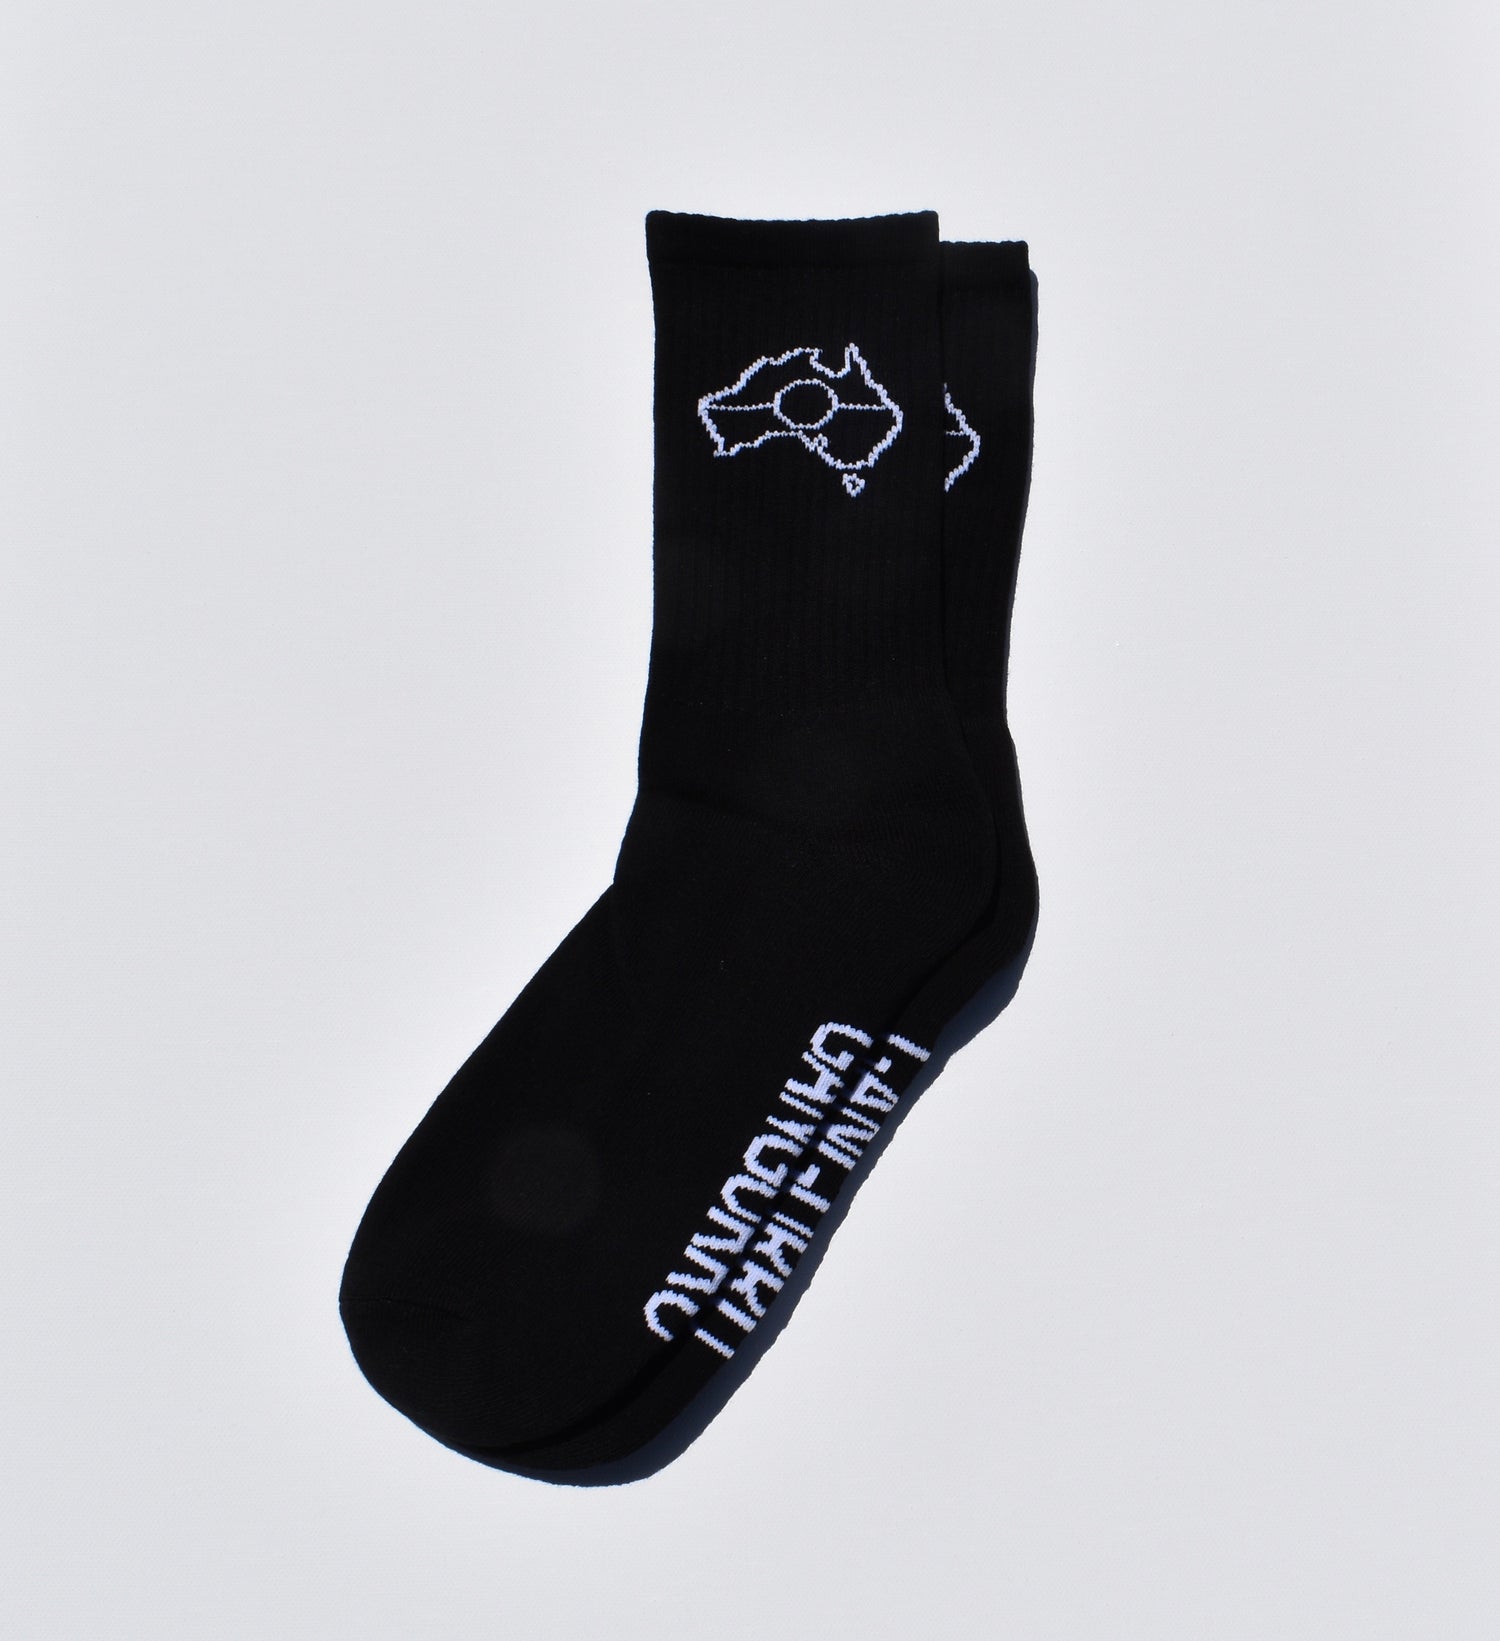 Australia Socks (2 pair)